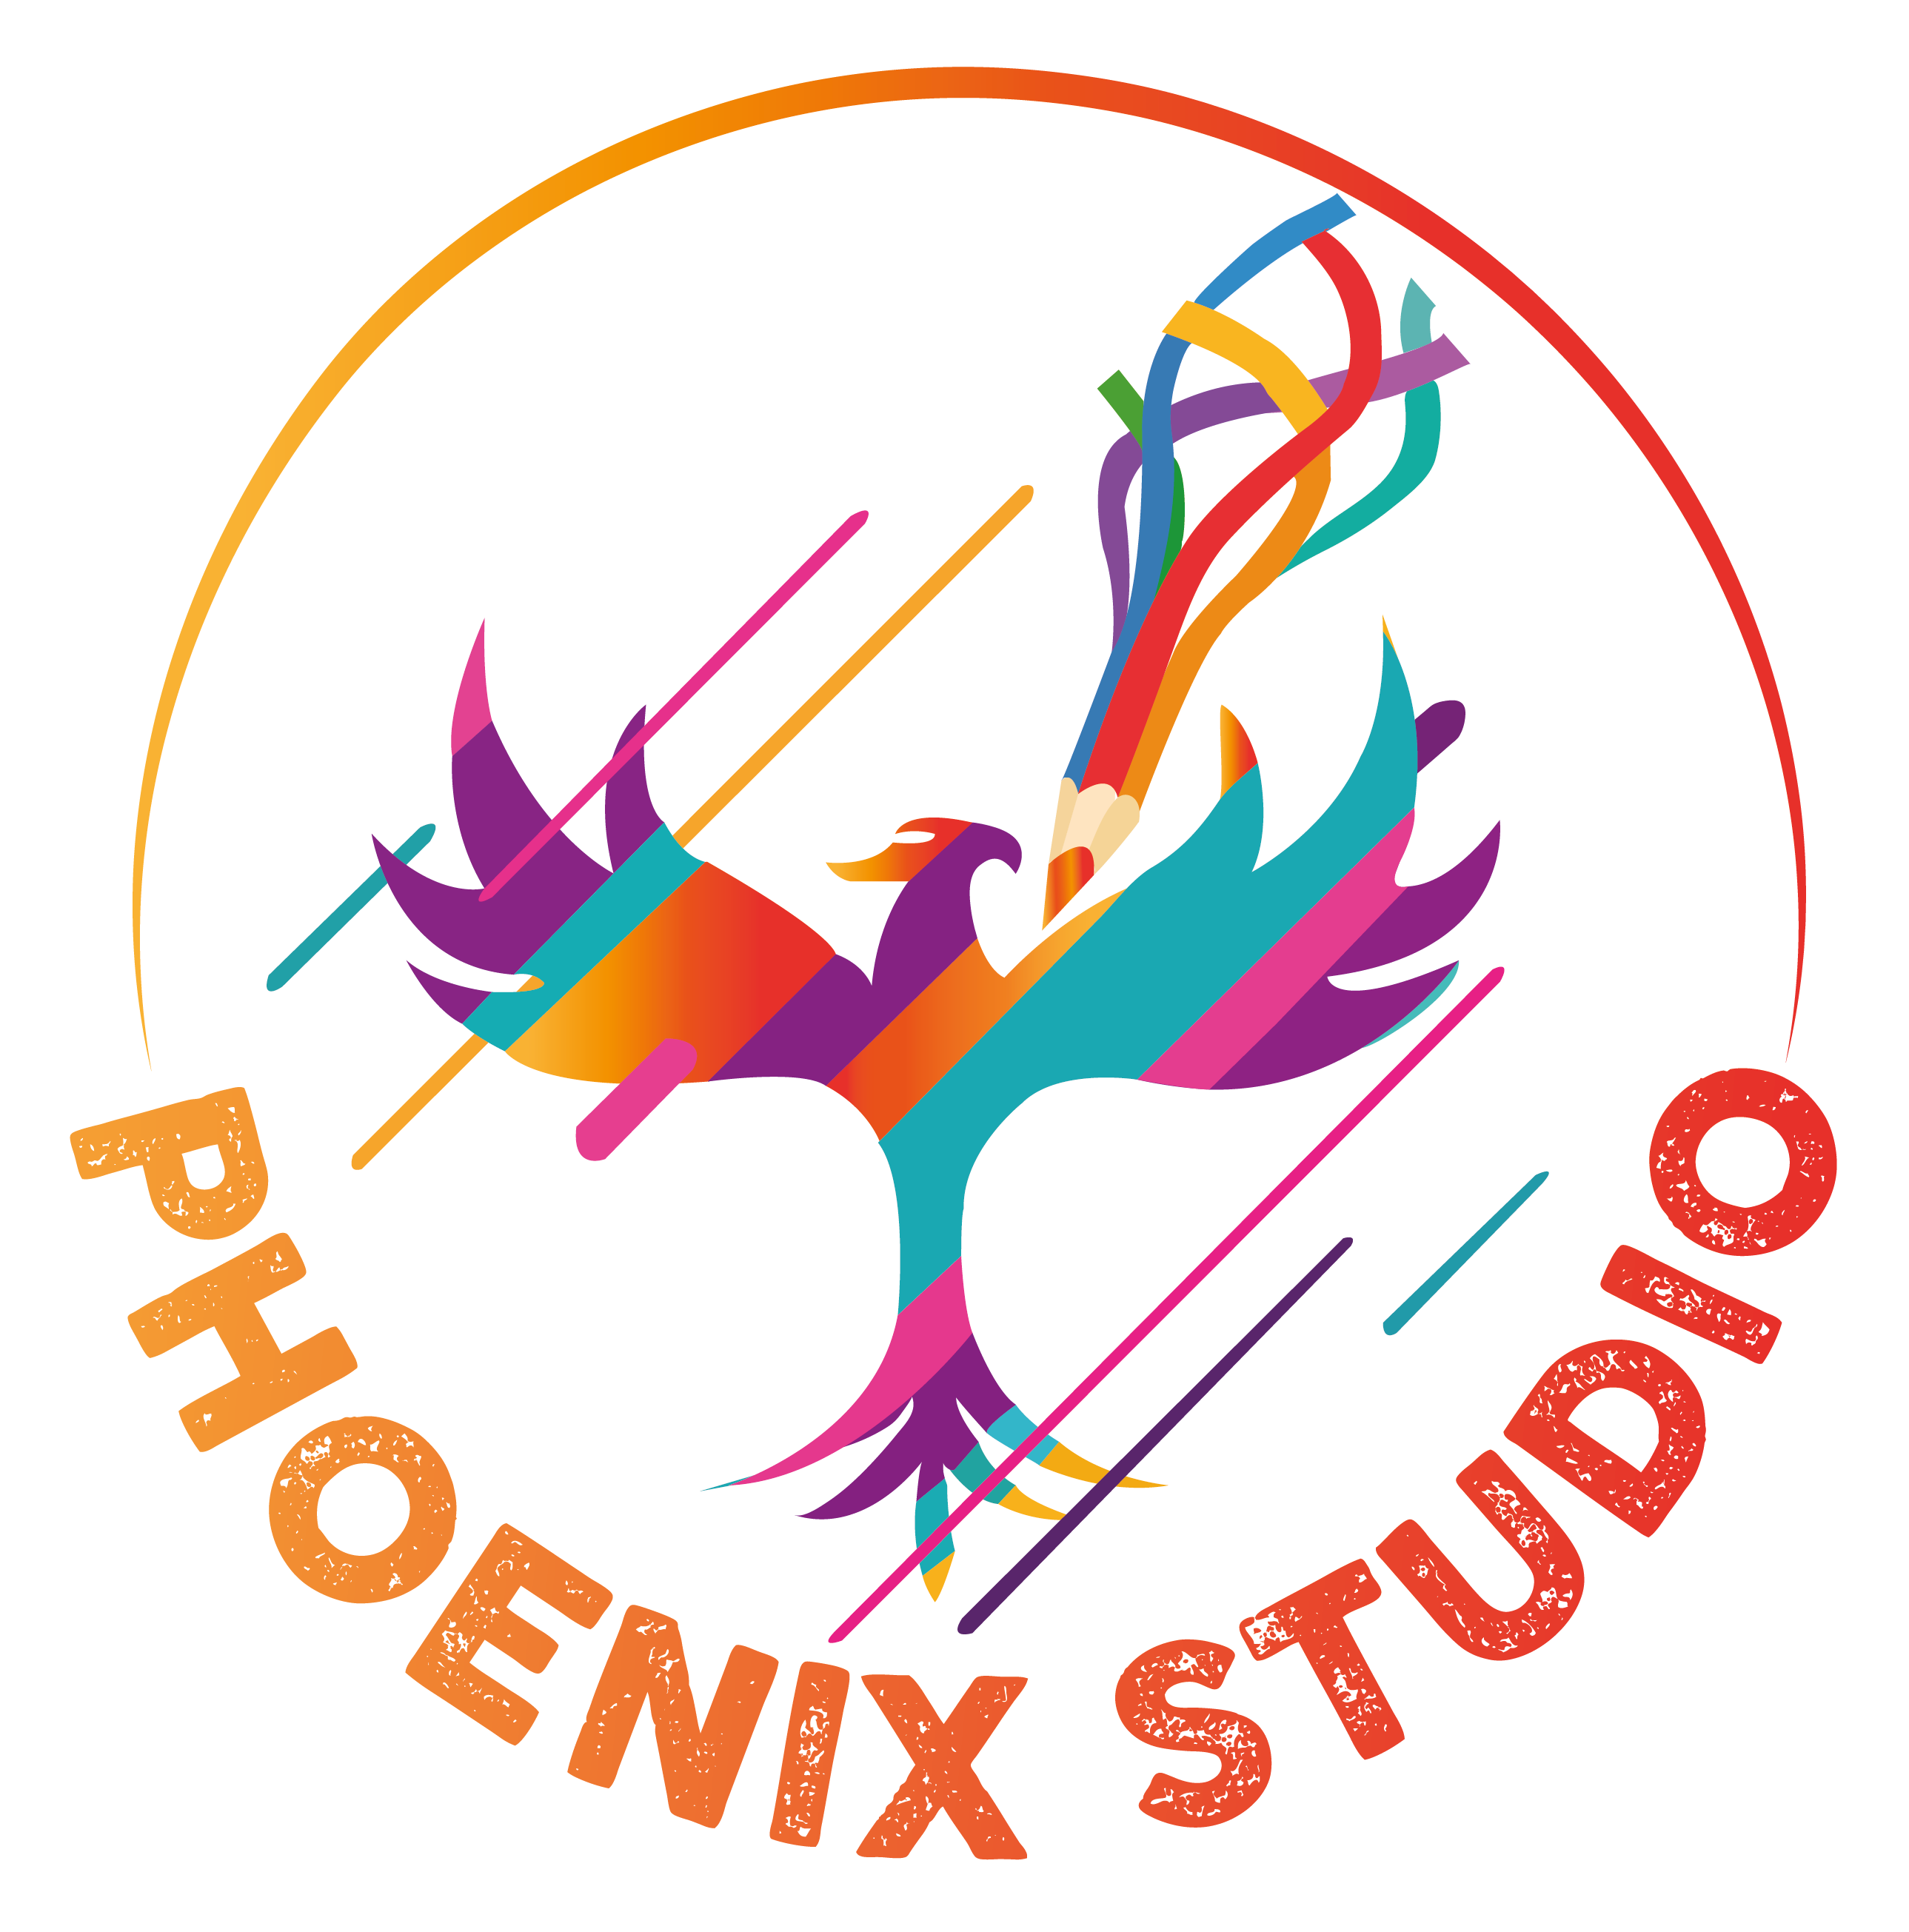 Phoenix Studio